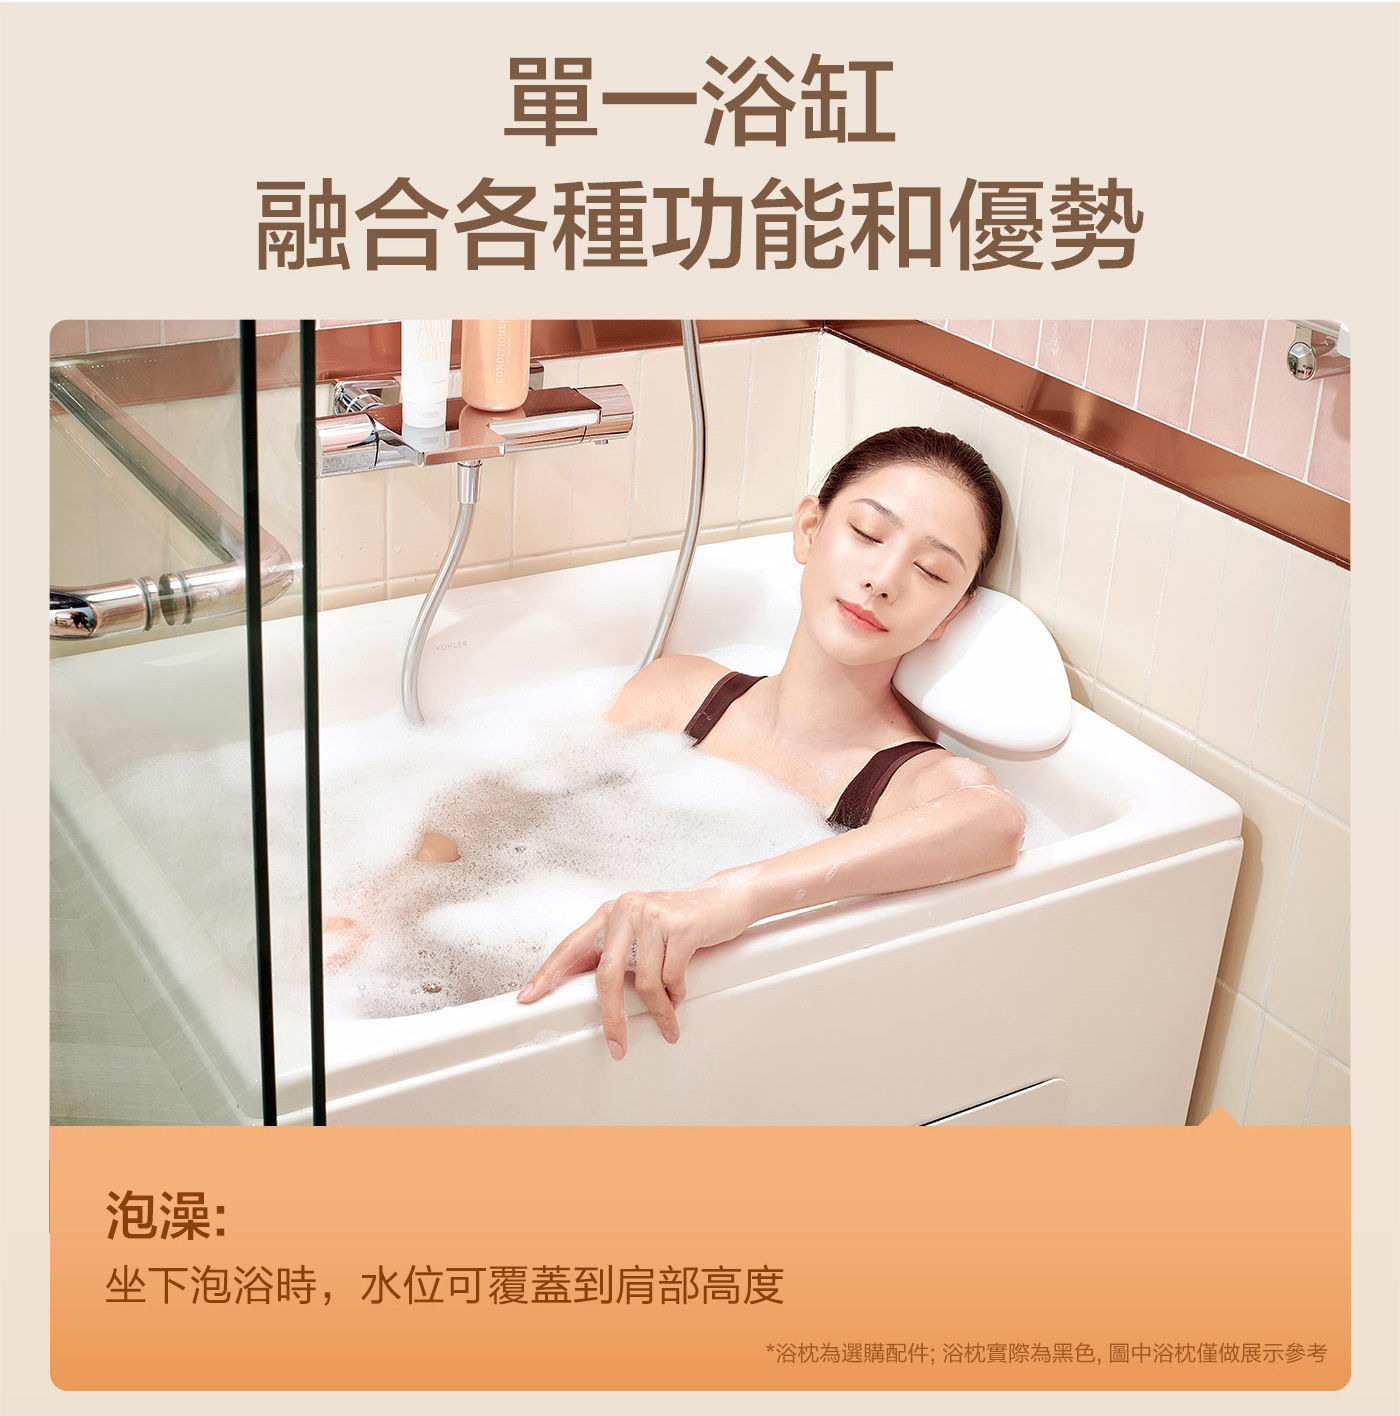 KOHLER 1.2公尺座臥式浴缸右角位 帶腳蹬+外排水節省空間的傑出優勢/符合小空間浴室的泡澡需求